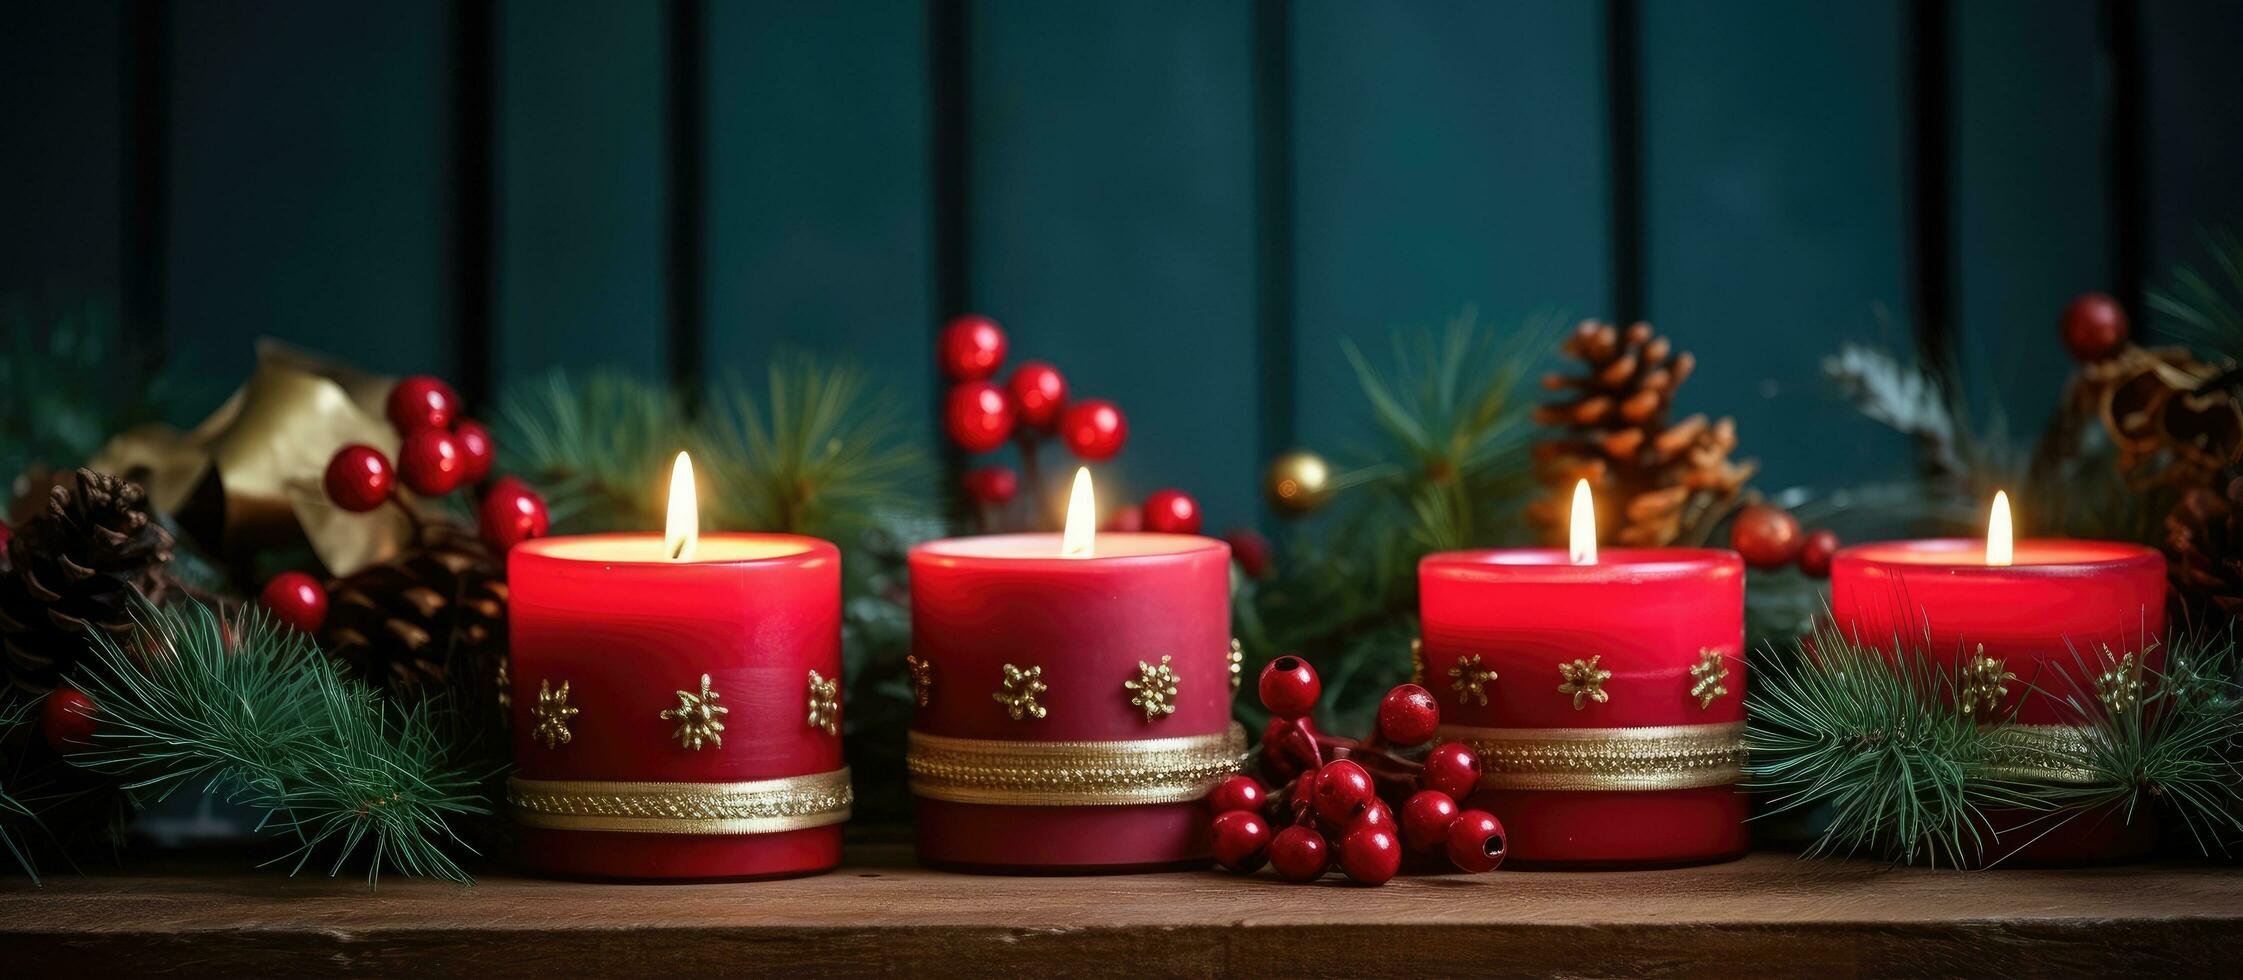 Navidad temática vela titulares y hecho a mano guirnaldas mejorar un calentar y atractivo interior ambiente foto